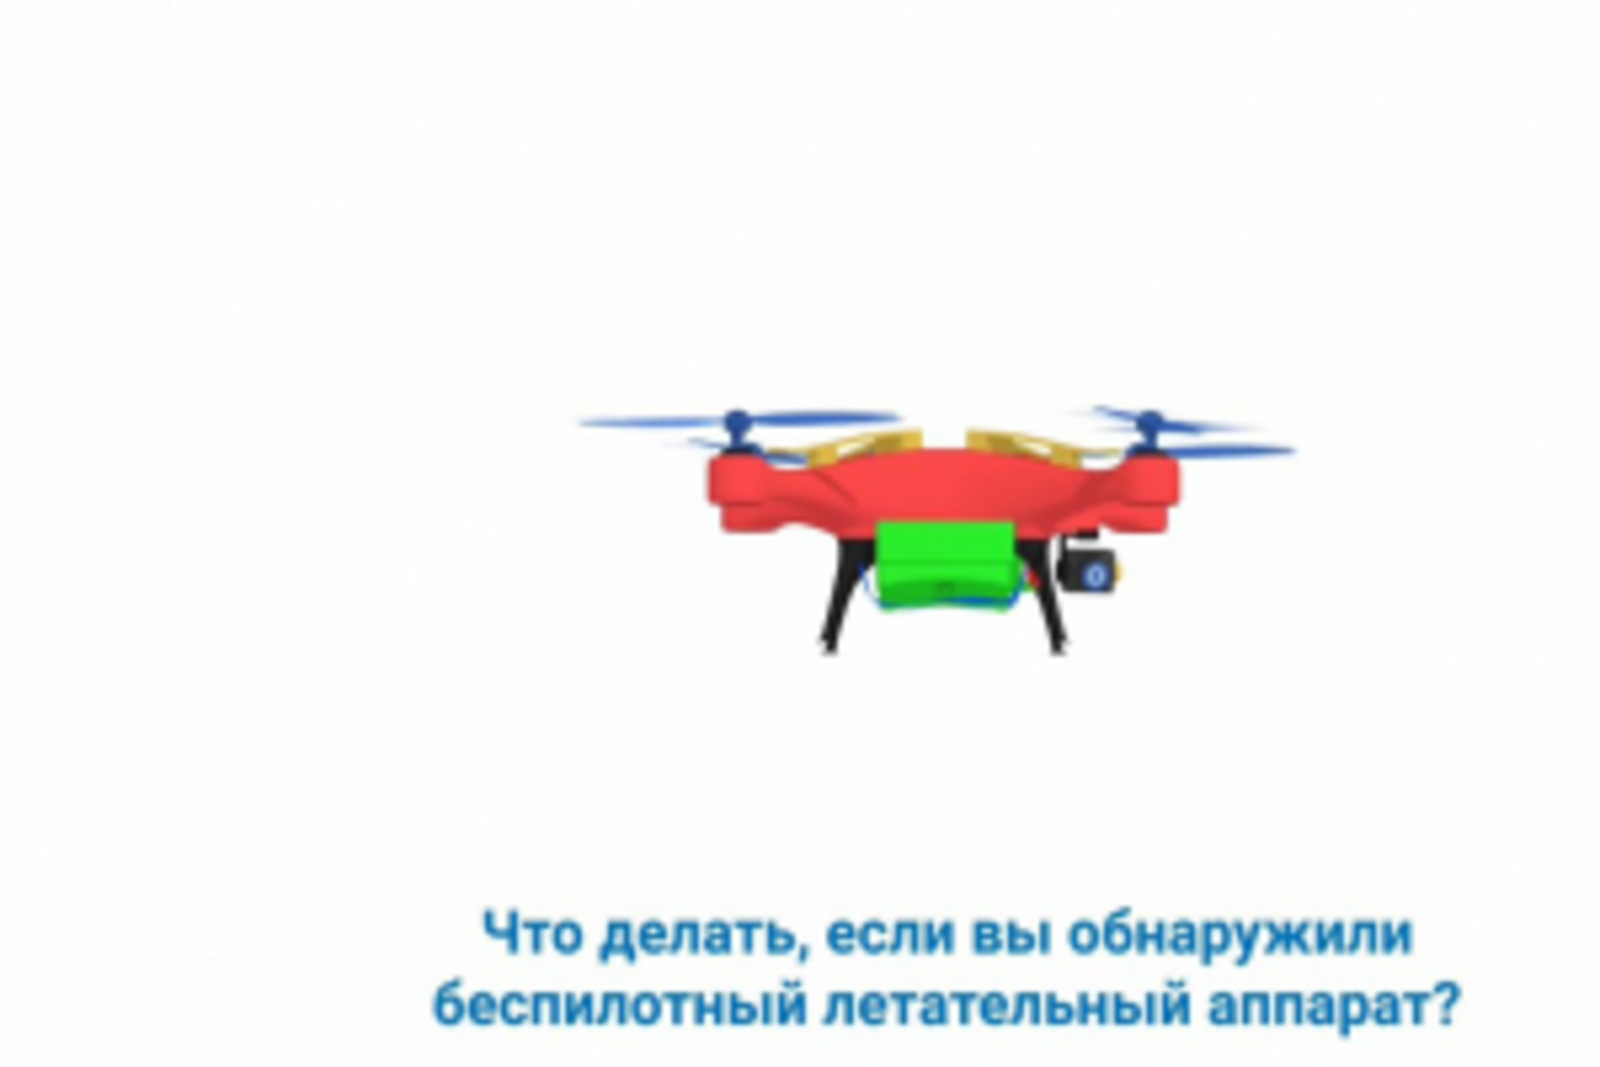 Жителям Башкирии объяснили, что делать при обнаружении беспилотного воздушного судна